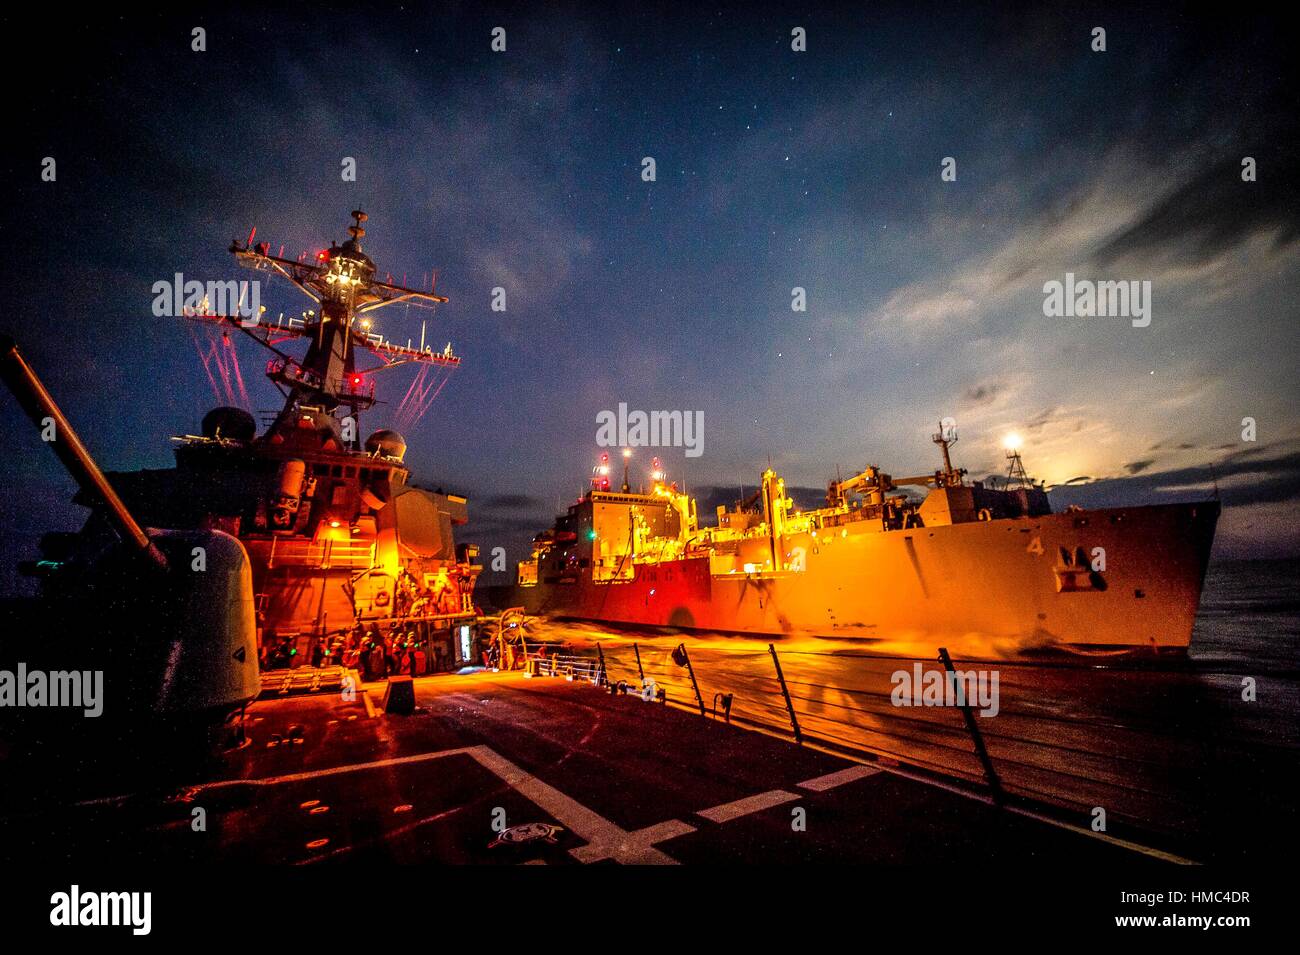 Meer von Japan (nov. 16, 2016) der Einsatz der Arleigh-Burke-Klasse geführte Anti-raketen-Zerstörer USS Barry (Ddg52) führt ein unterwegs-Auffüllung Stockfoto